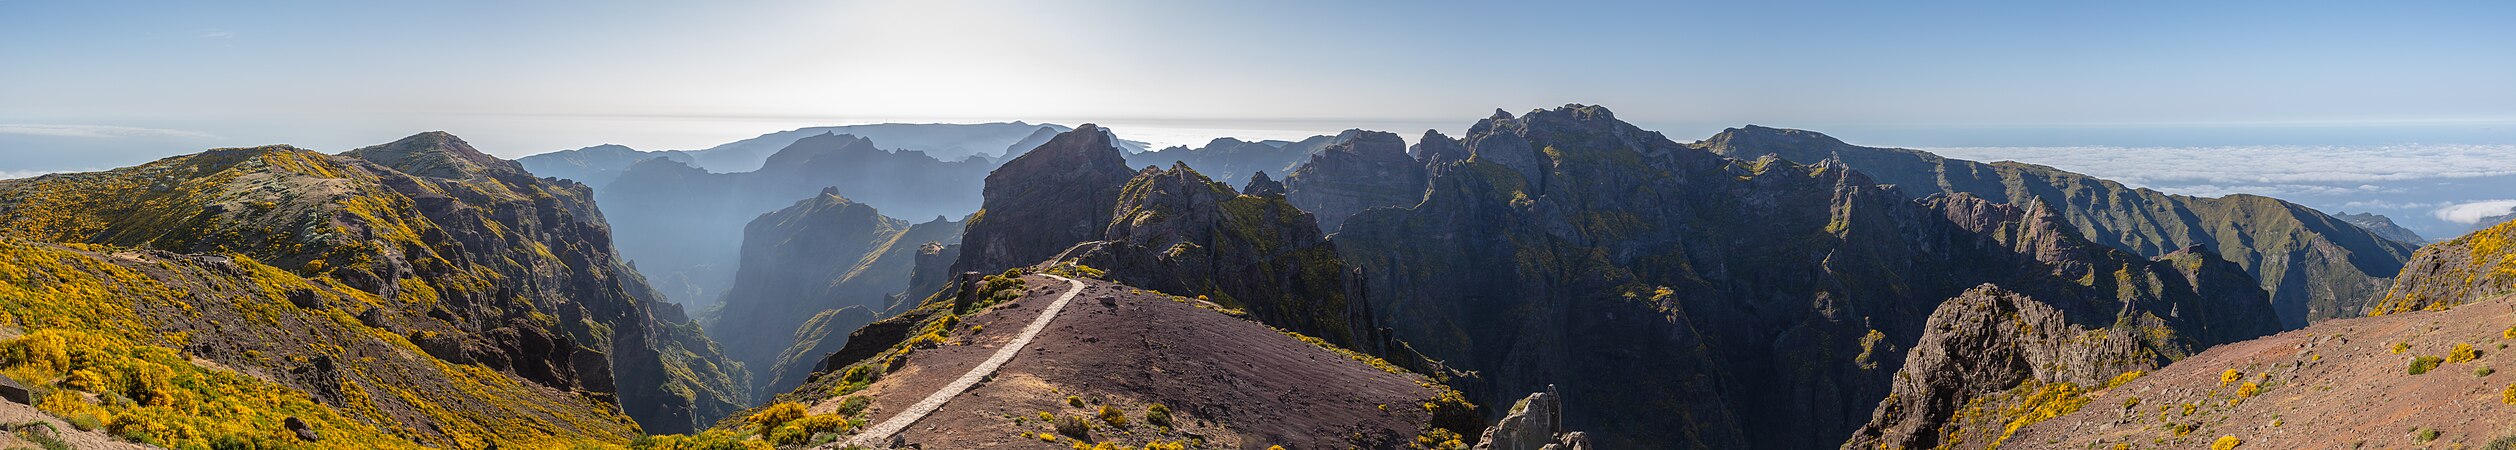 阿雷罗峰的风景。它是位于葡萄牙马德拉岛中央山脉的社区重要性遗址。